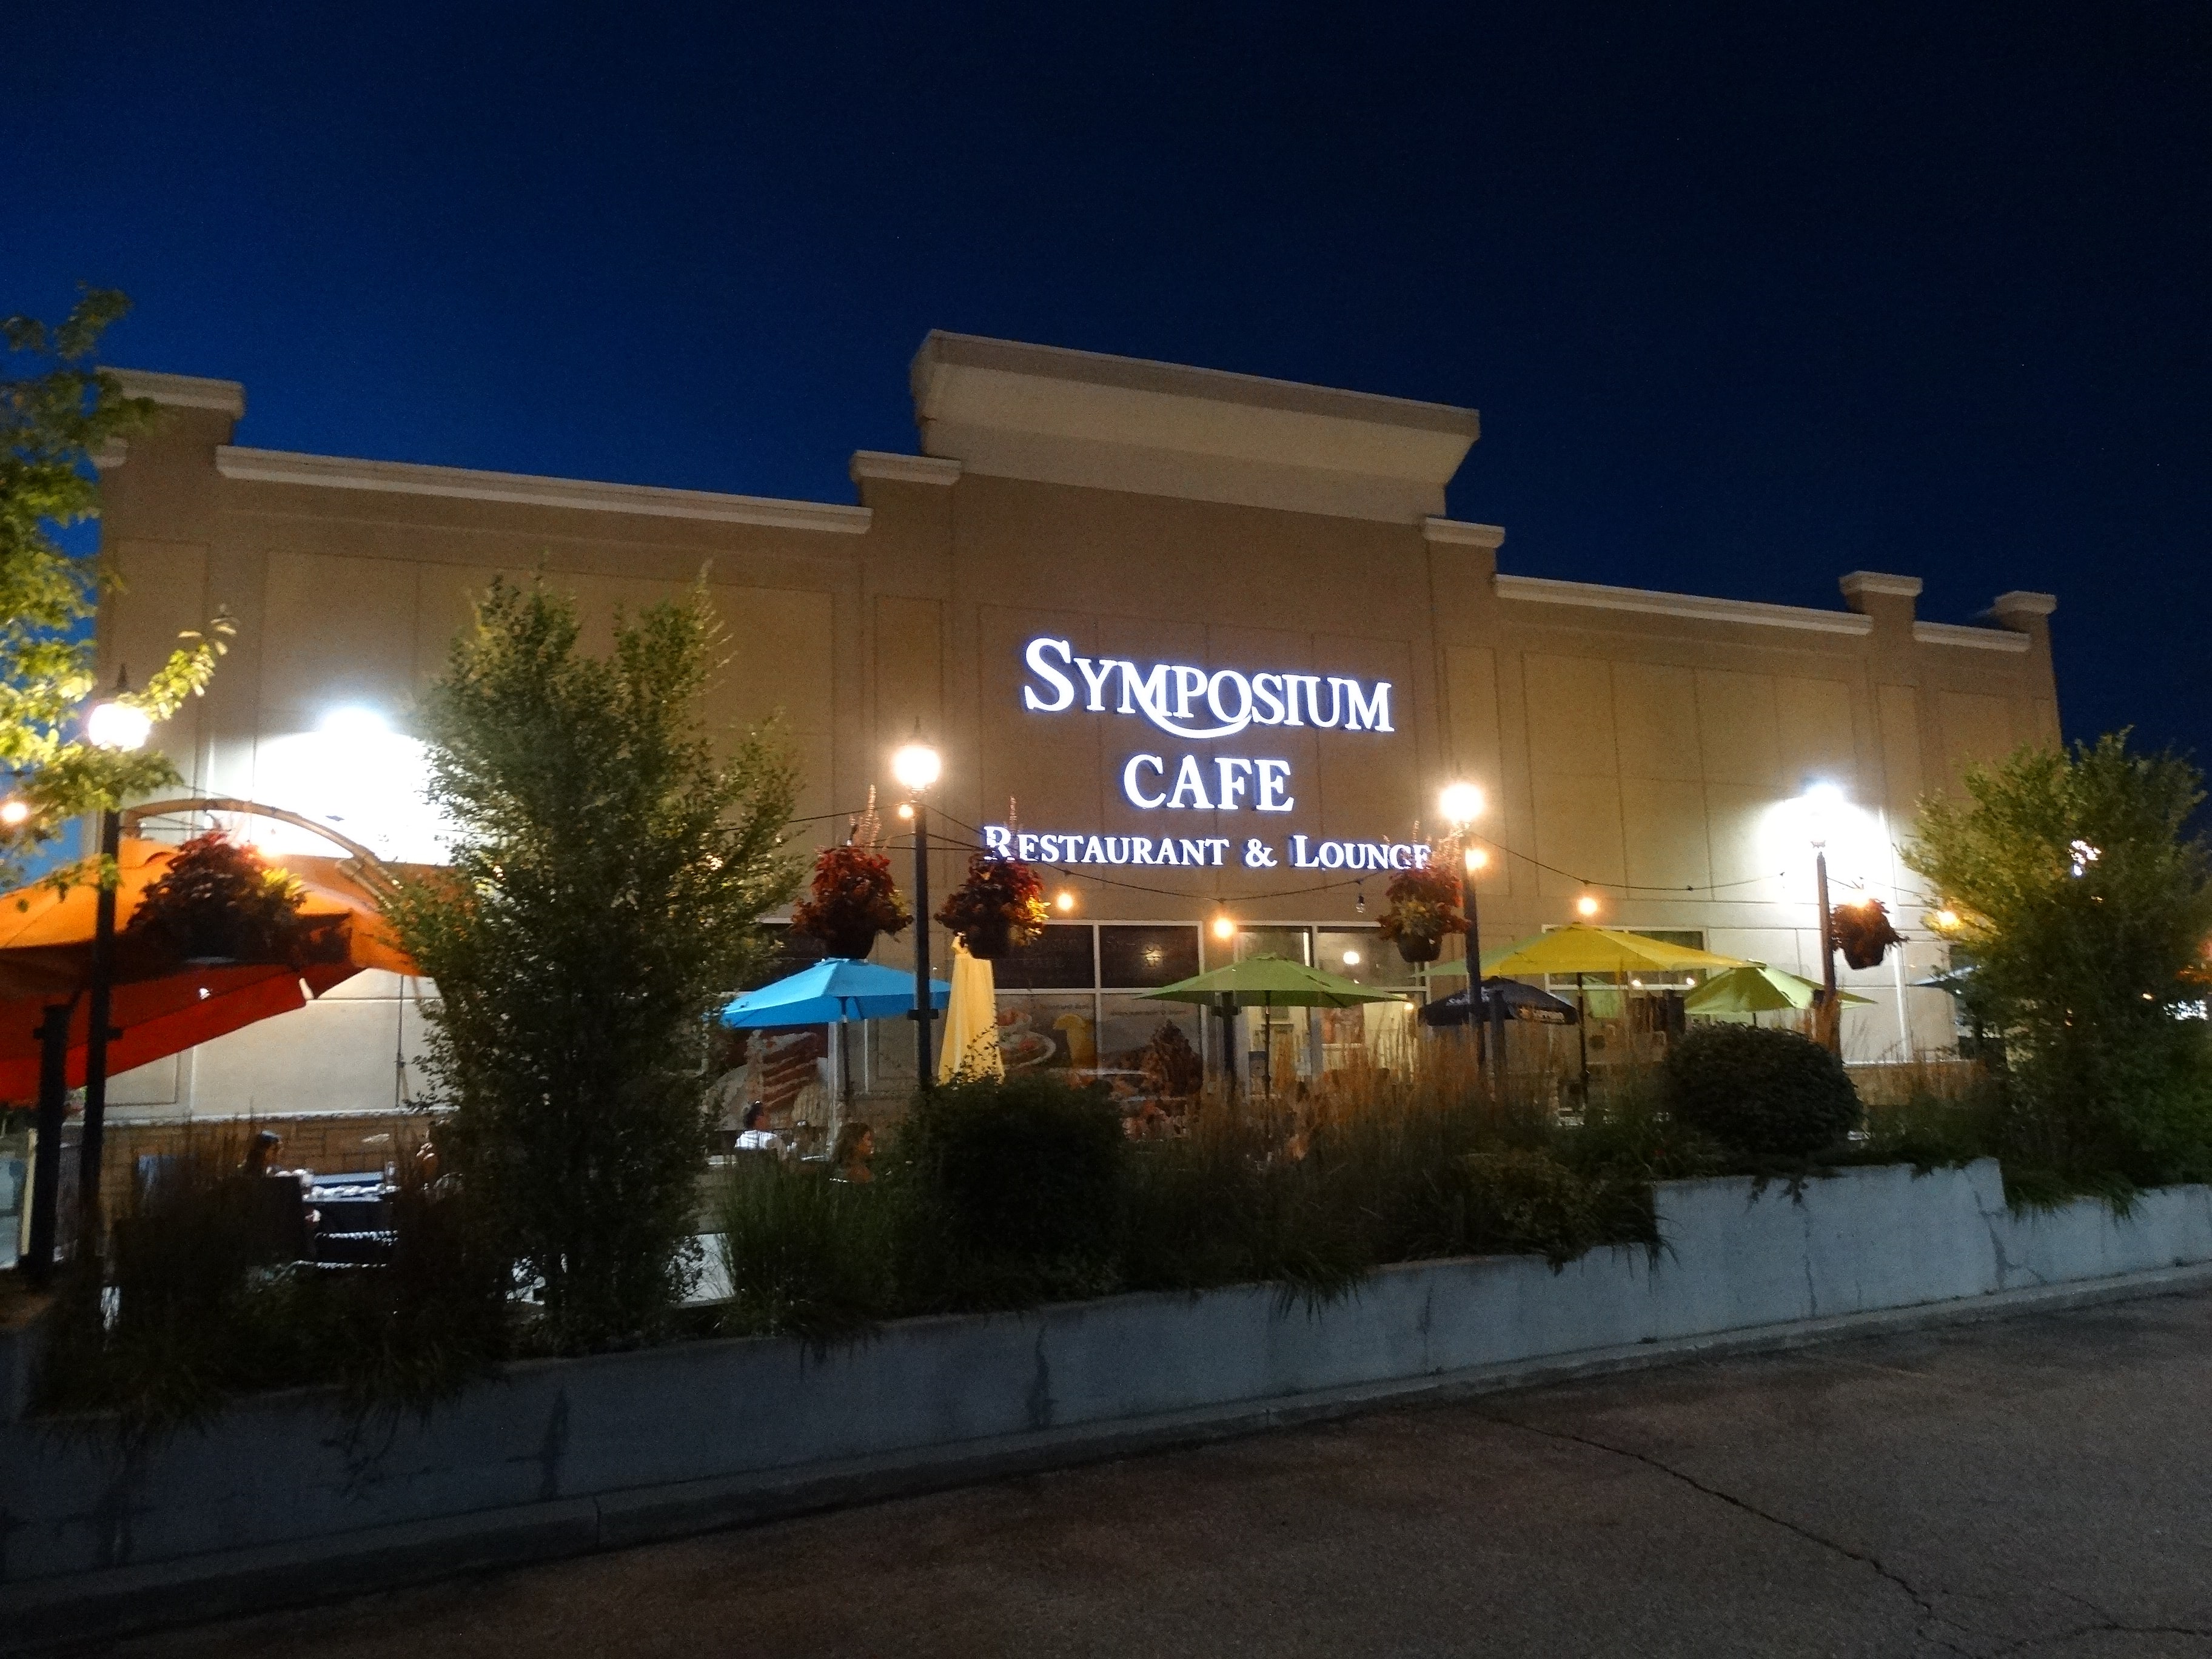 Aurora Exterior - Symposium Cafe Restaurant